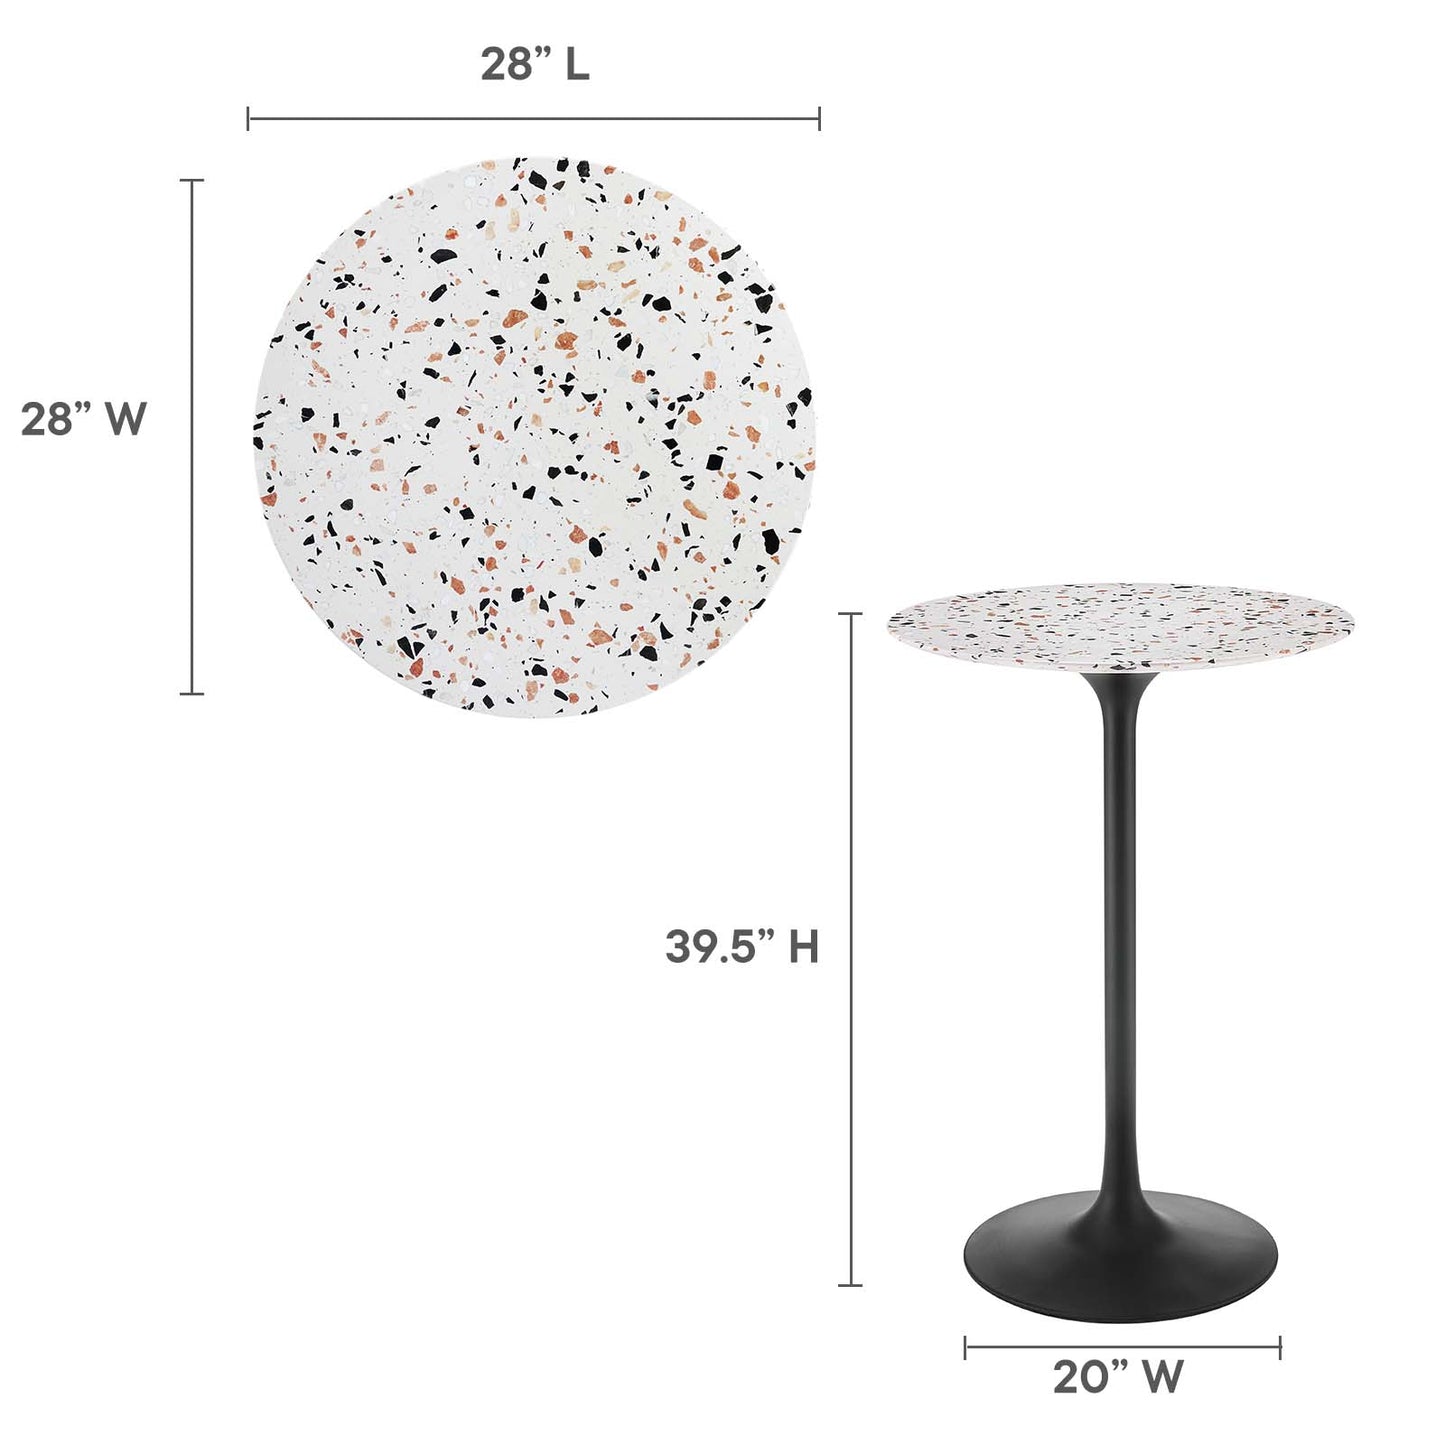 Lippa 28" Round Terrazzo Bar Table Black White EEI-5709-BLK-WHI